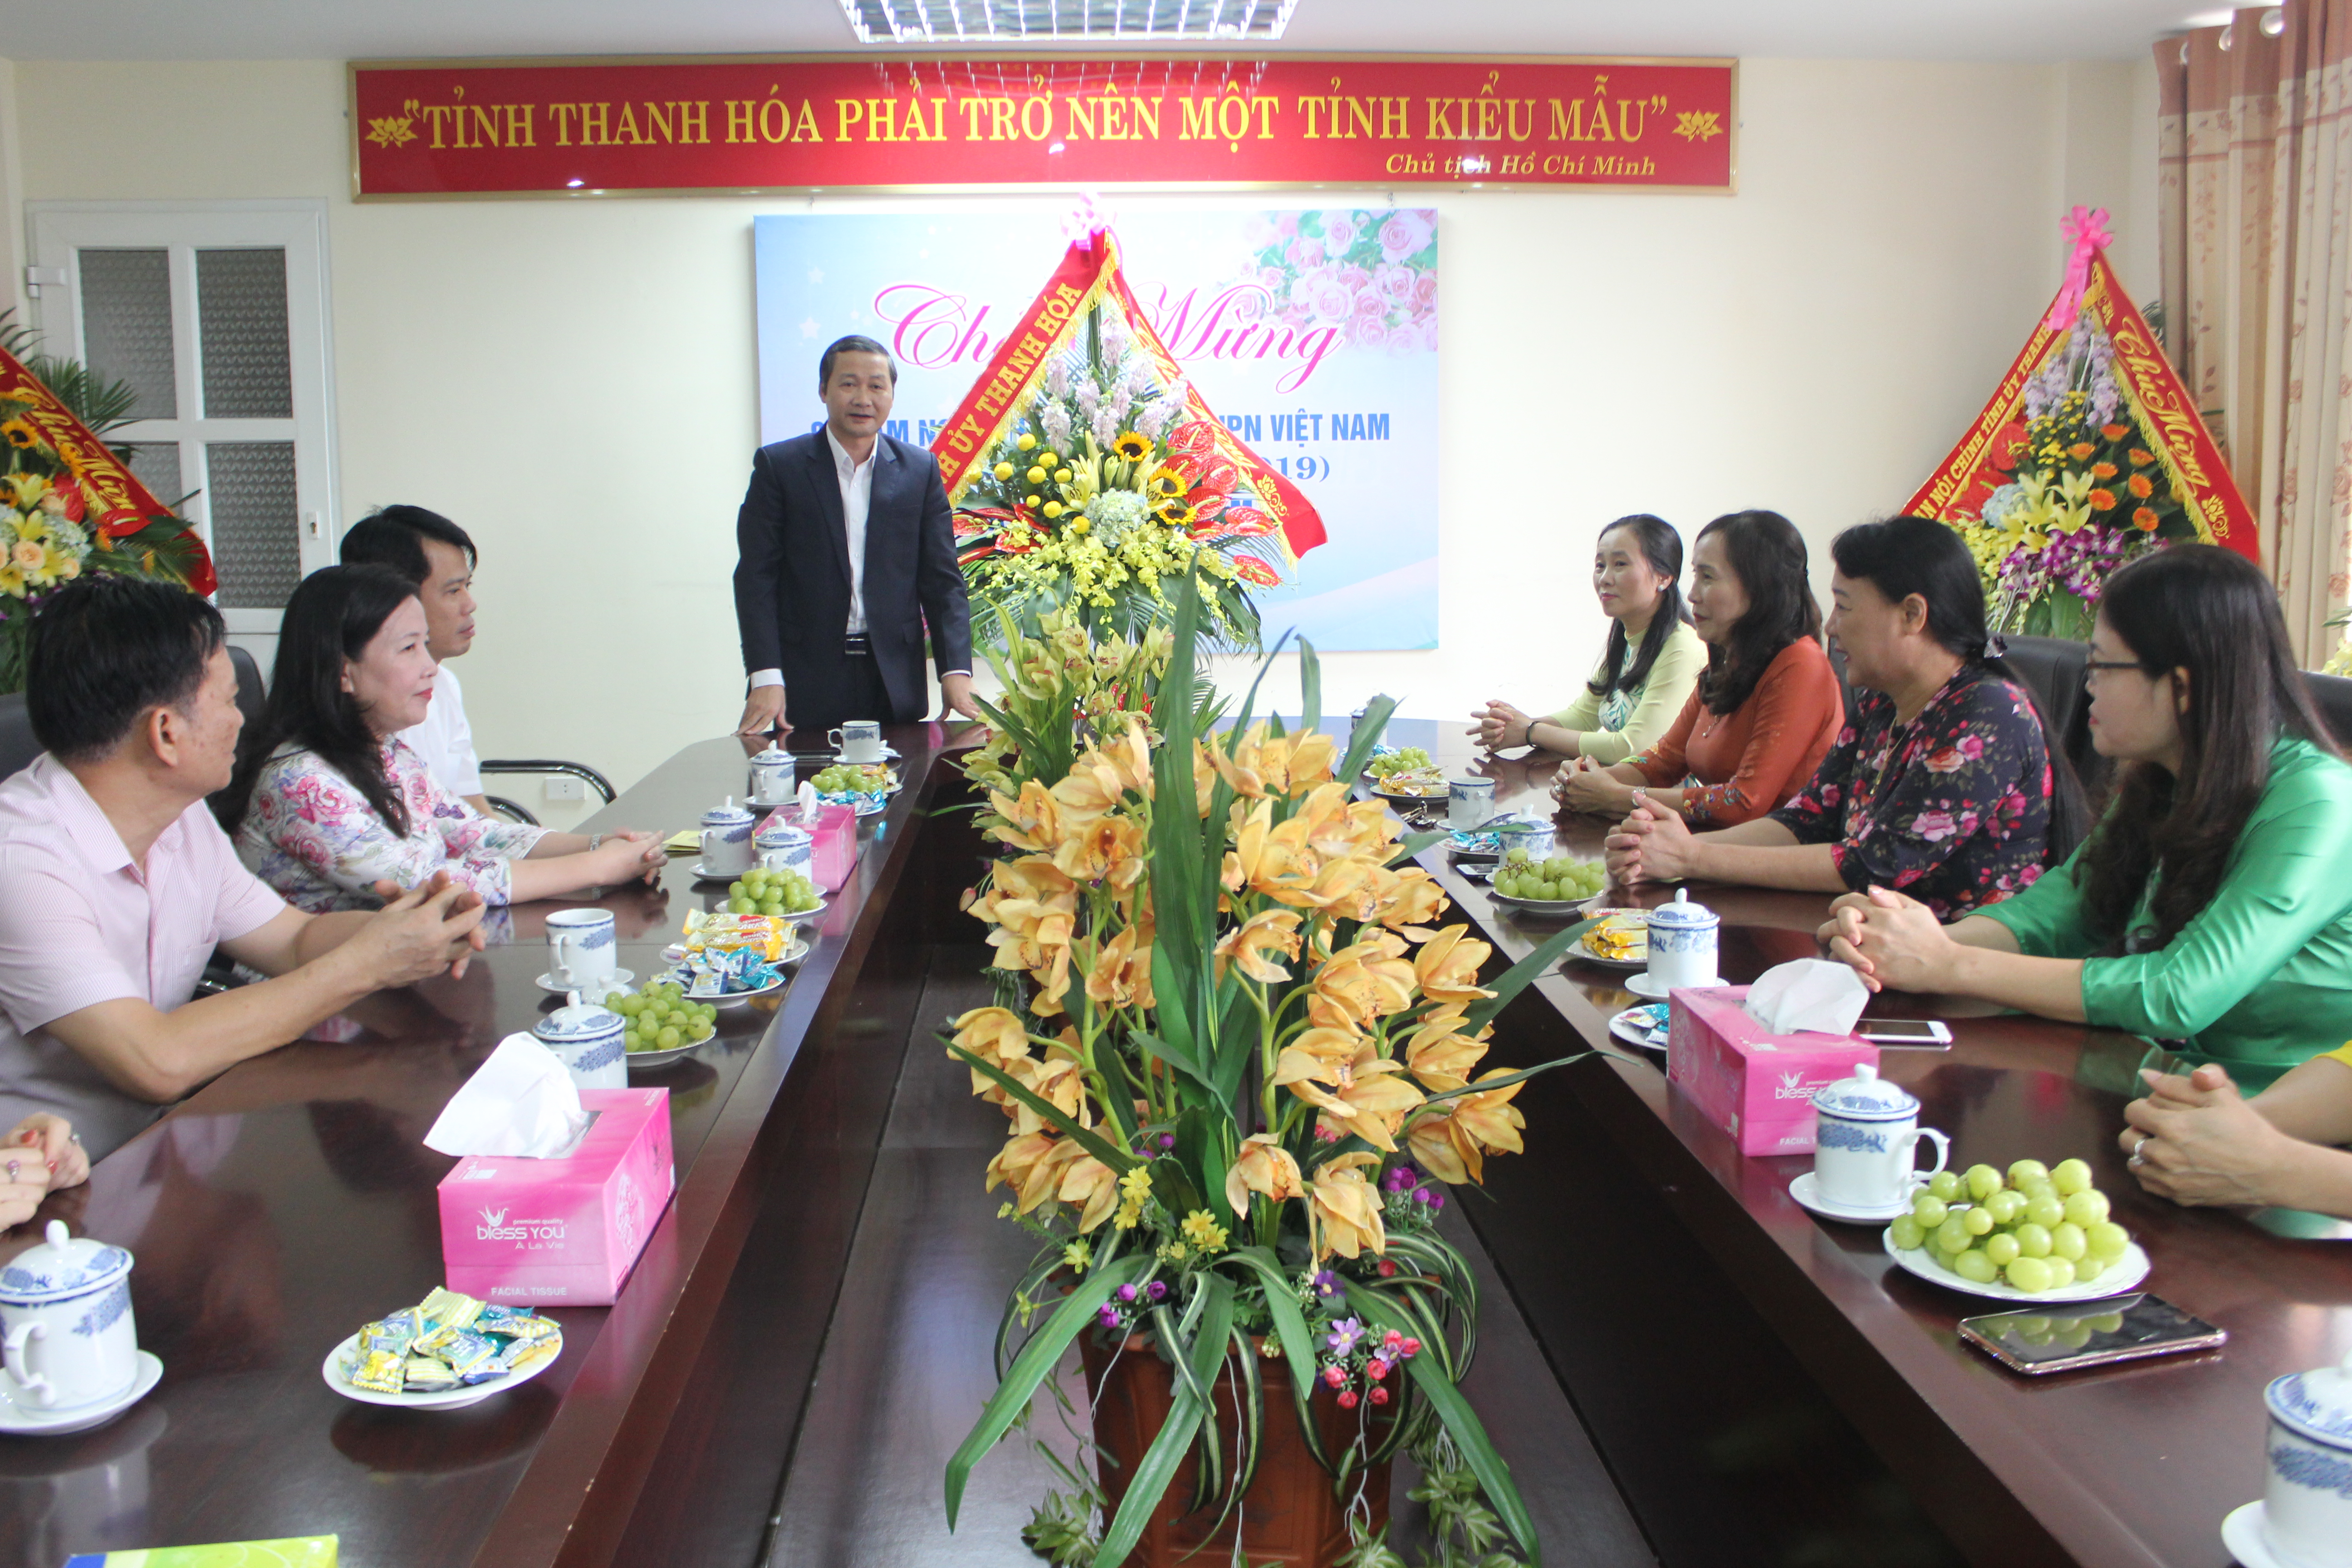 Đồng chí Đỗ Minh Tuấn, Phó Bí thư Tỉnh ủy chúc mừng Hội LHPN tỉnh